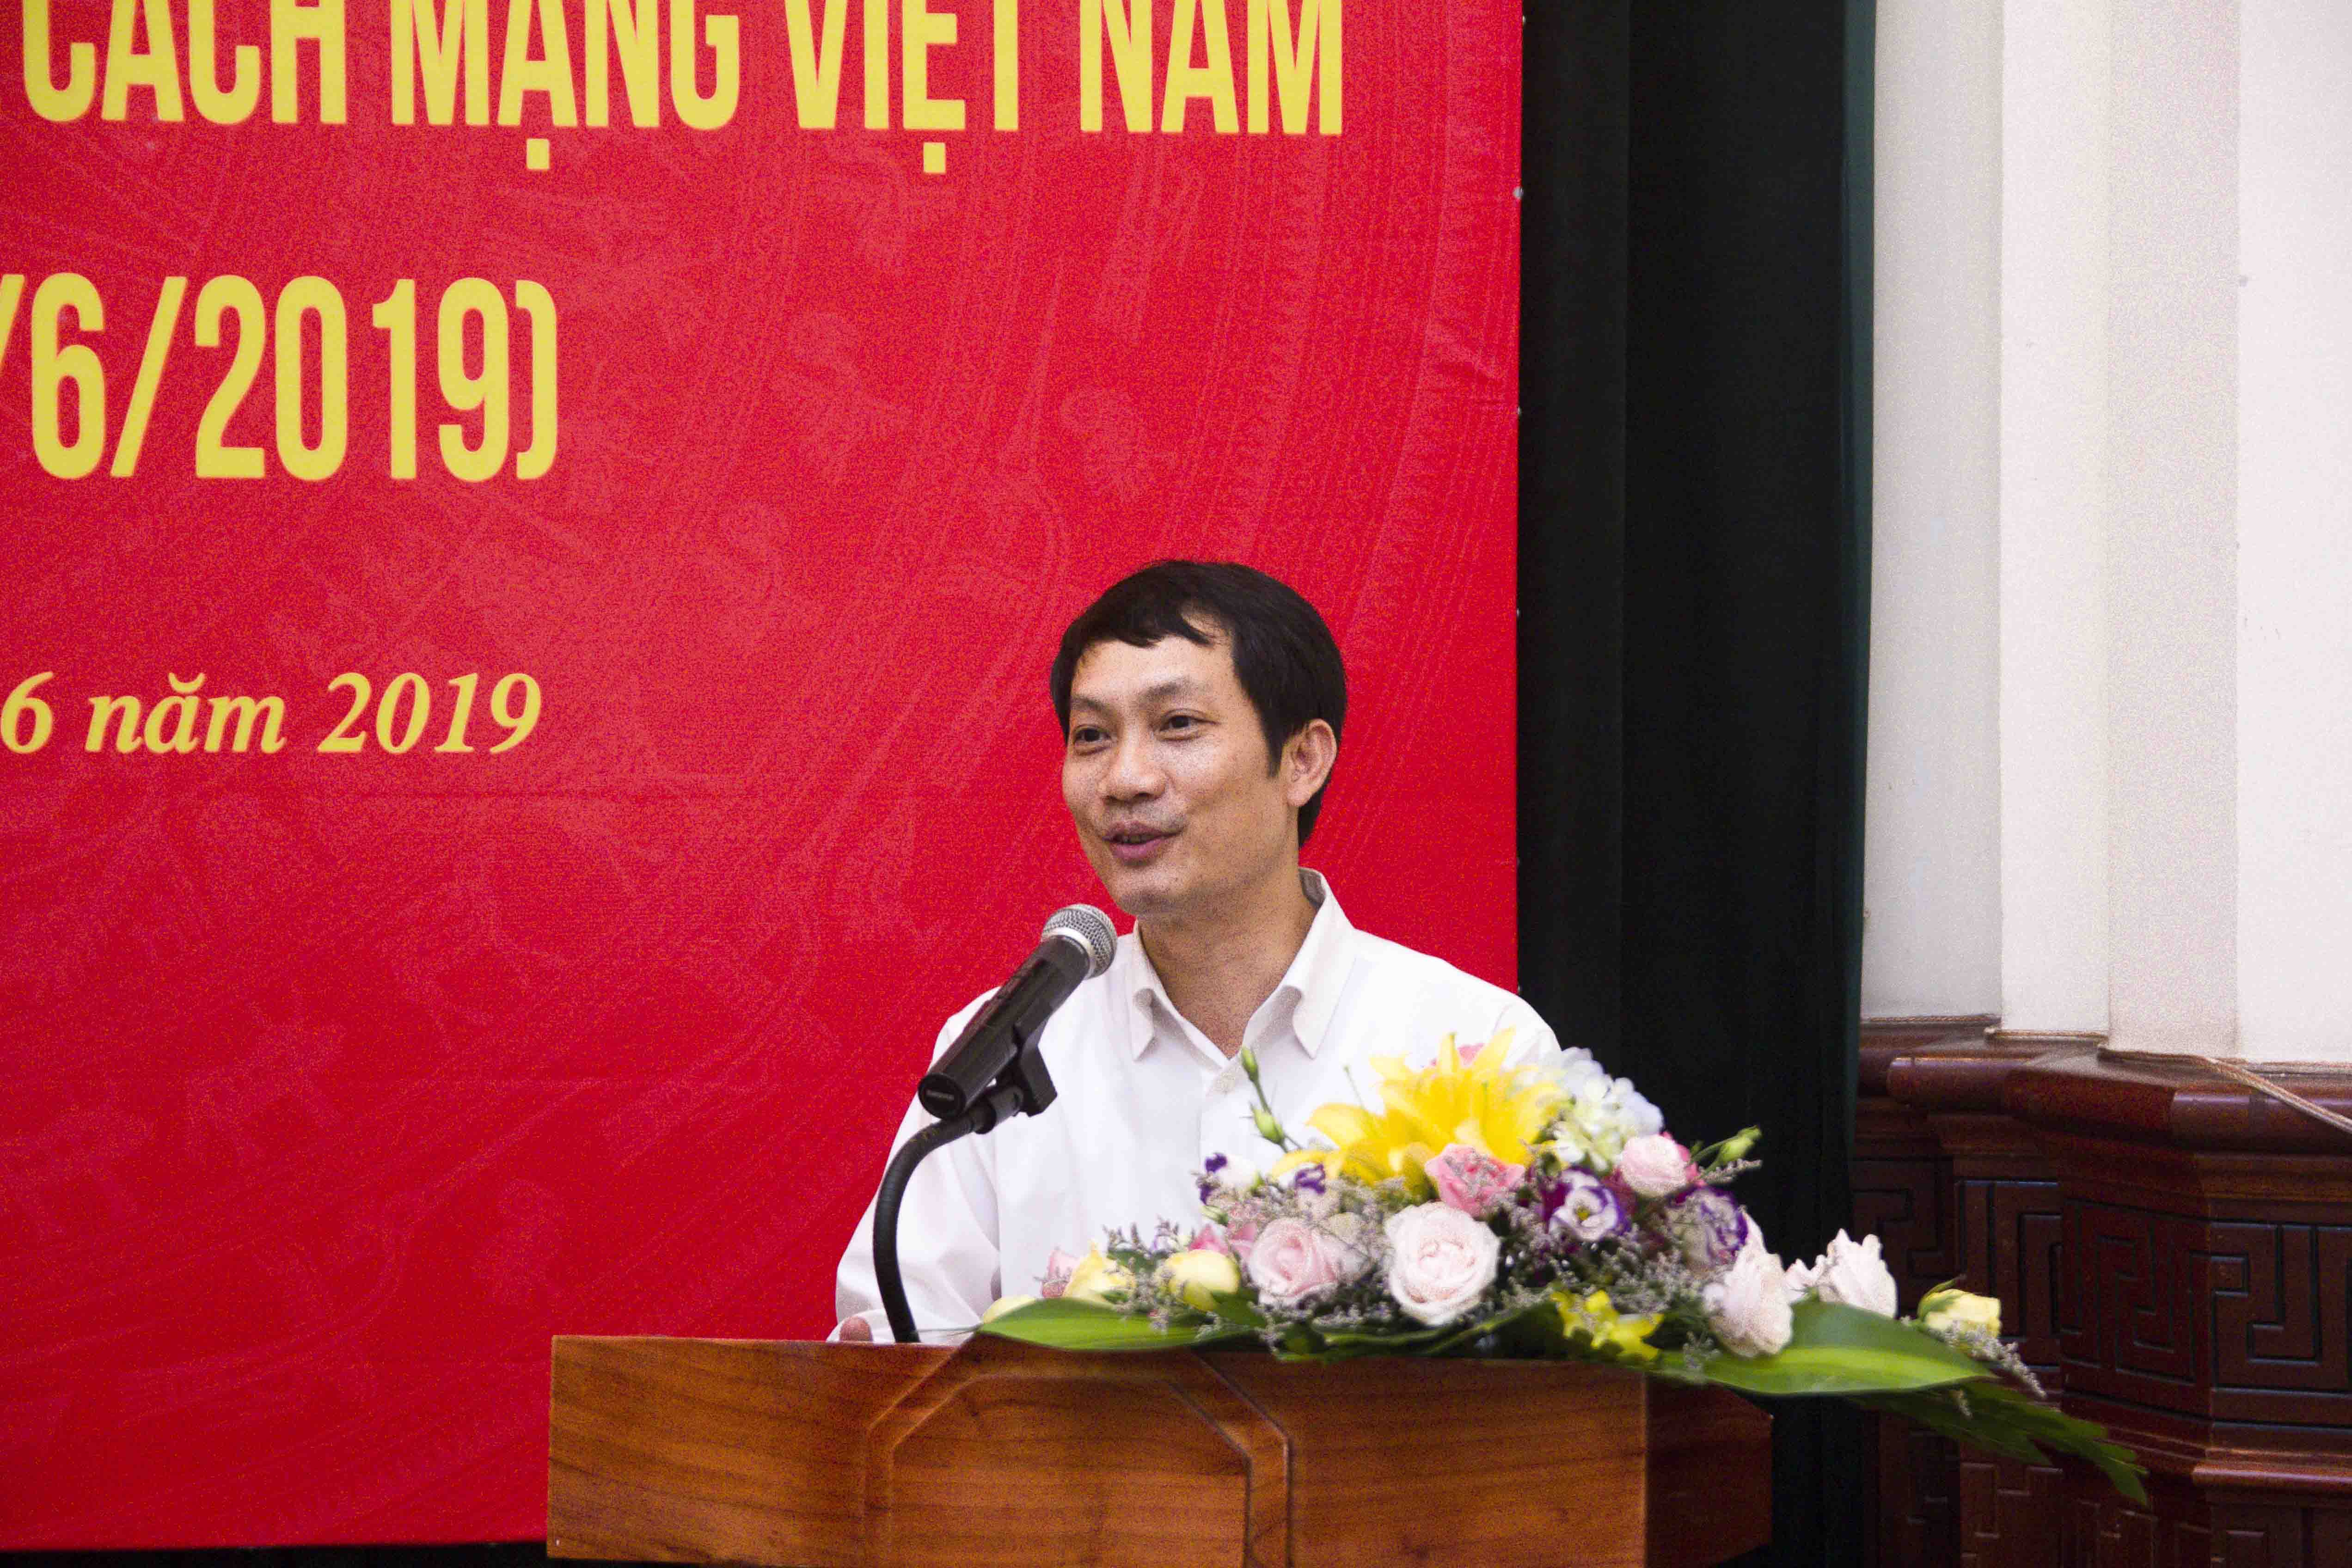 Bộ Công Thương tổ chức Gặp mặt báo chí Kỷ niệm 94 năm Ngày Báo chí Cách mạng Việt Nam (21/6/1925 - 21/6/2019)